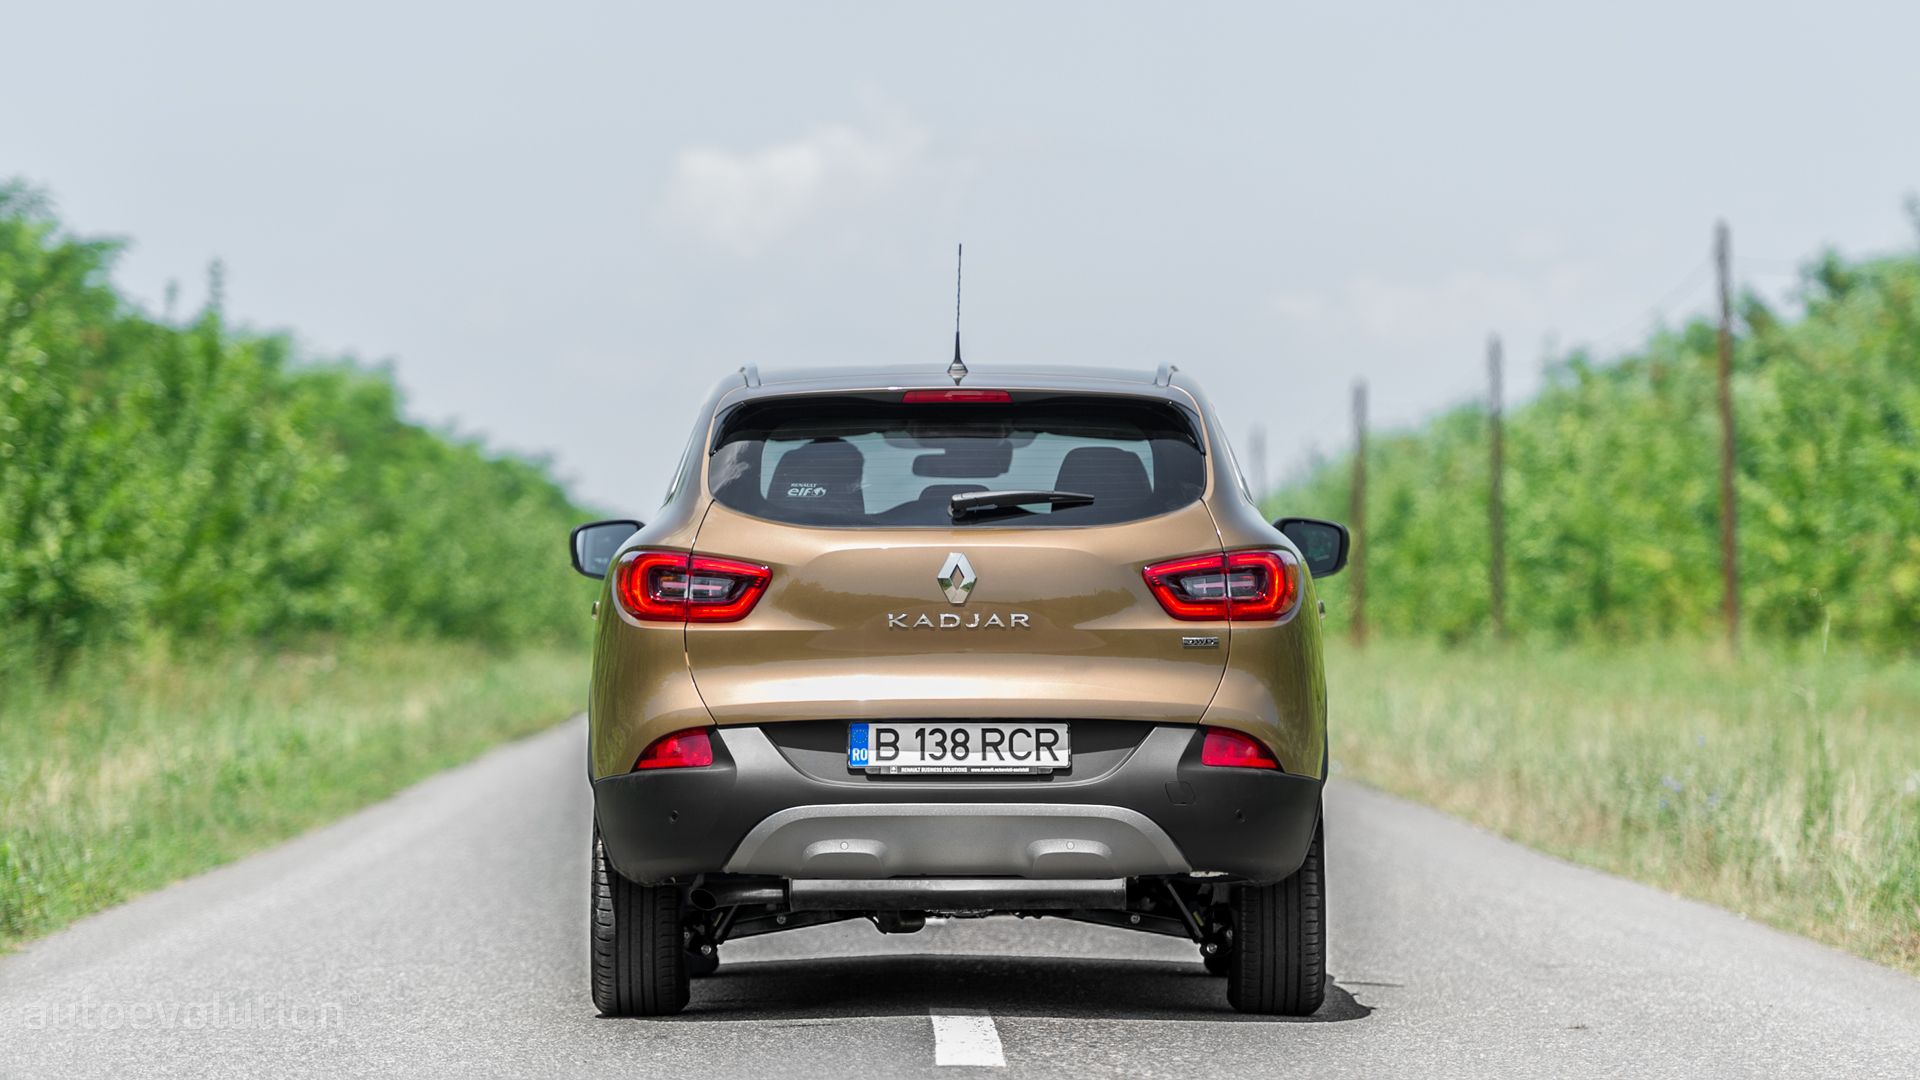 2015 - Review Kadjar Renault autoevolution